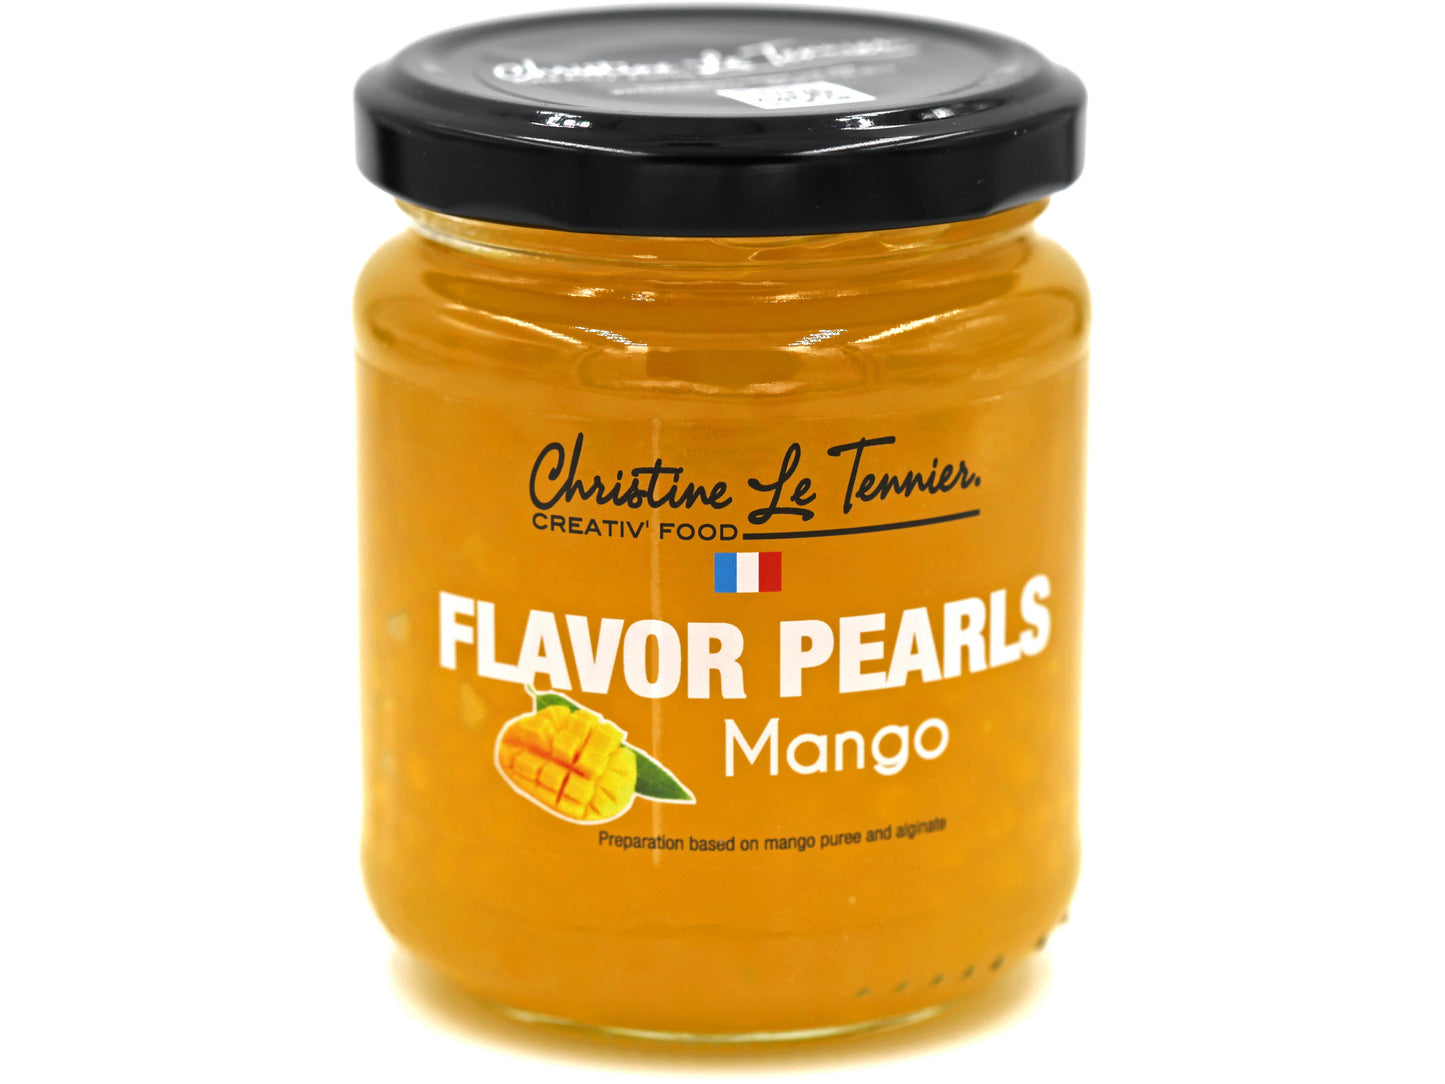 christine le tennier flavored pearls, 7oz jar, france mango